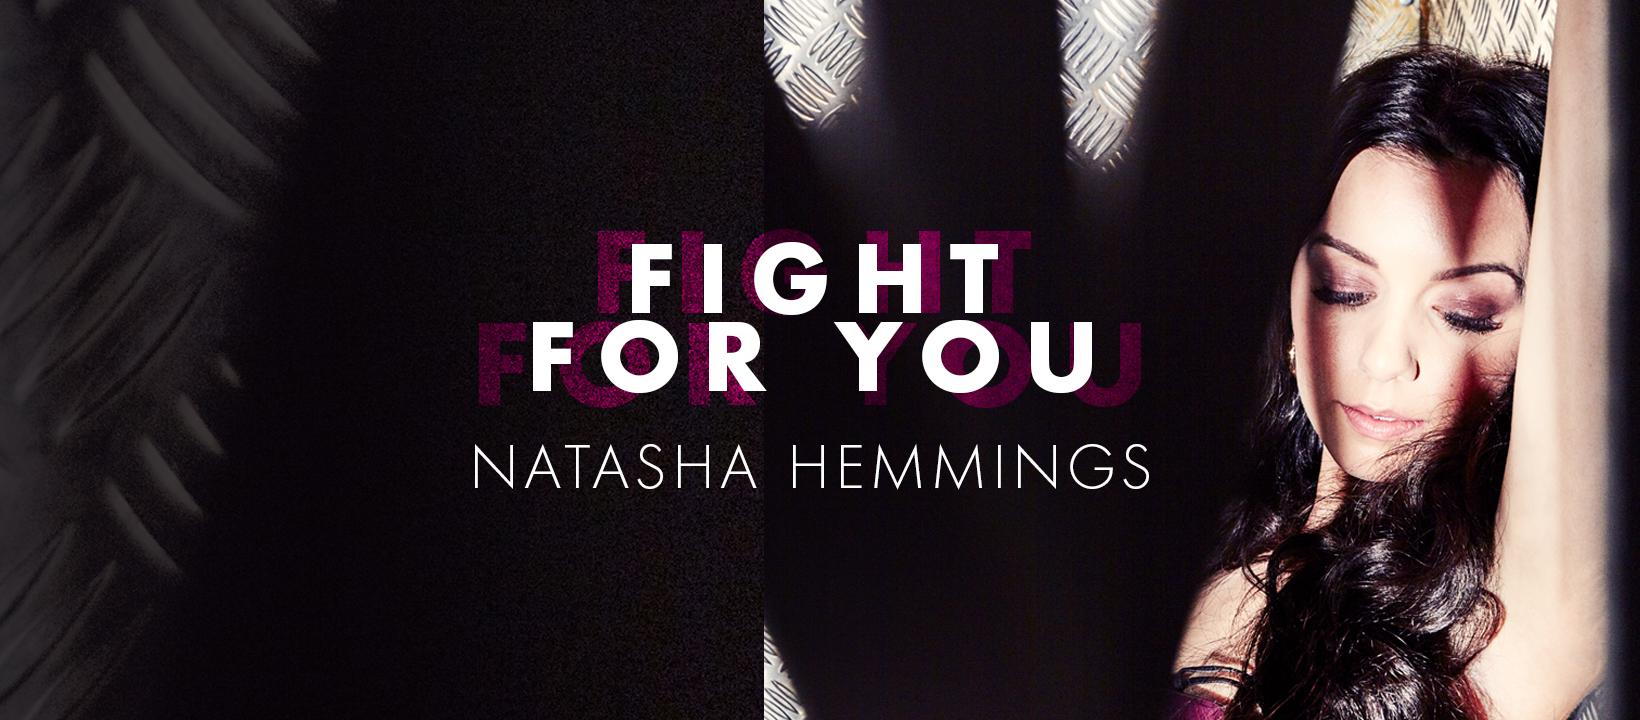 Natasha Hemmings